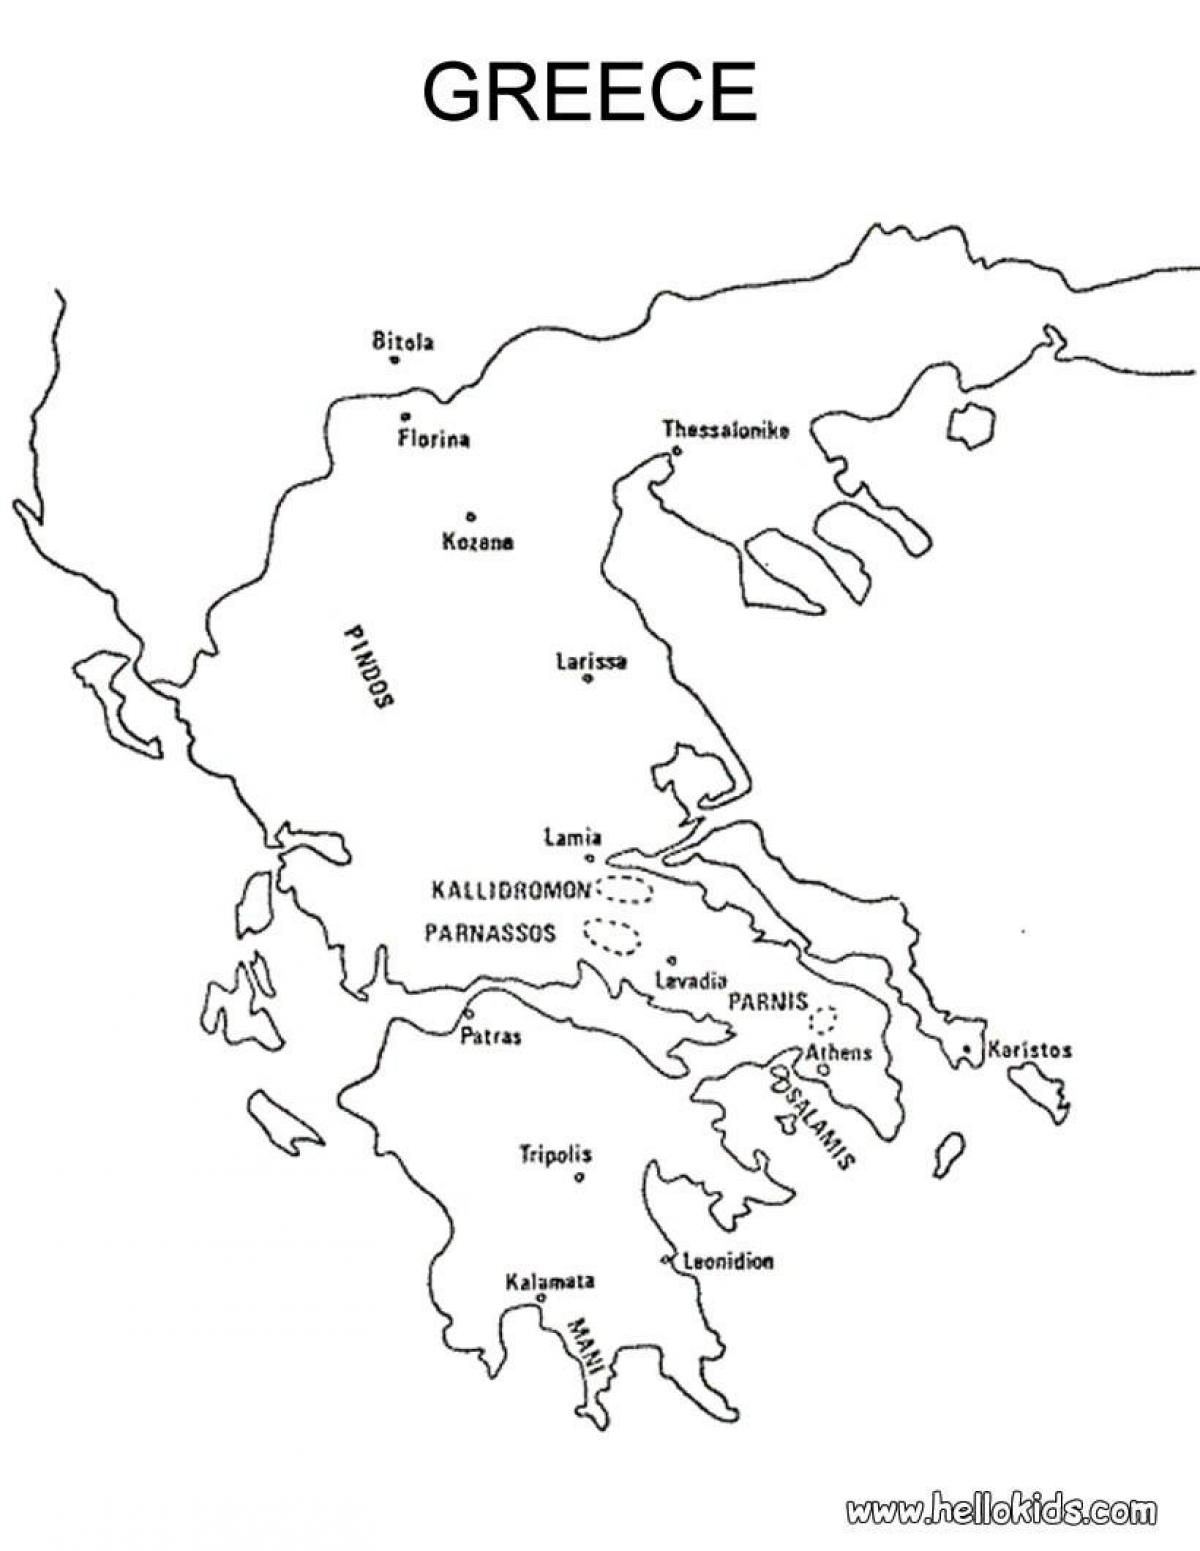 Grecia Dibujo Del Mapa Mapa De Grecia De Dibujo En El Sur De Europa